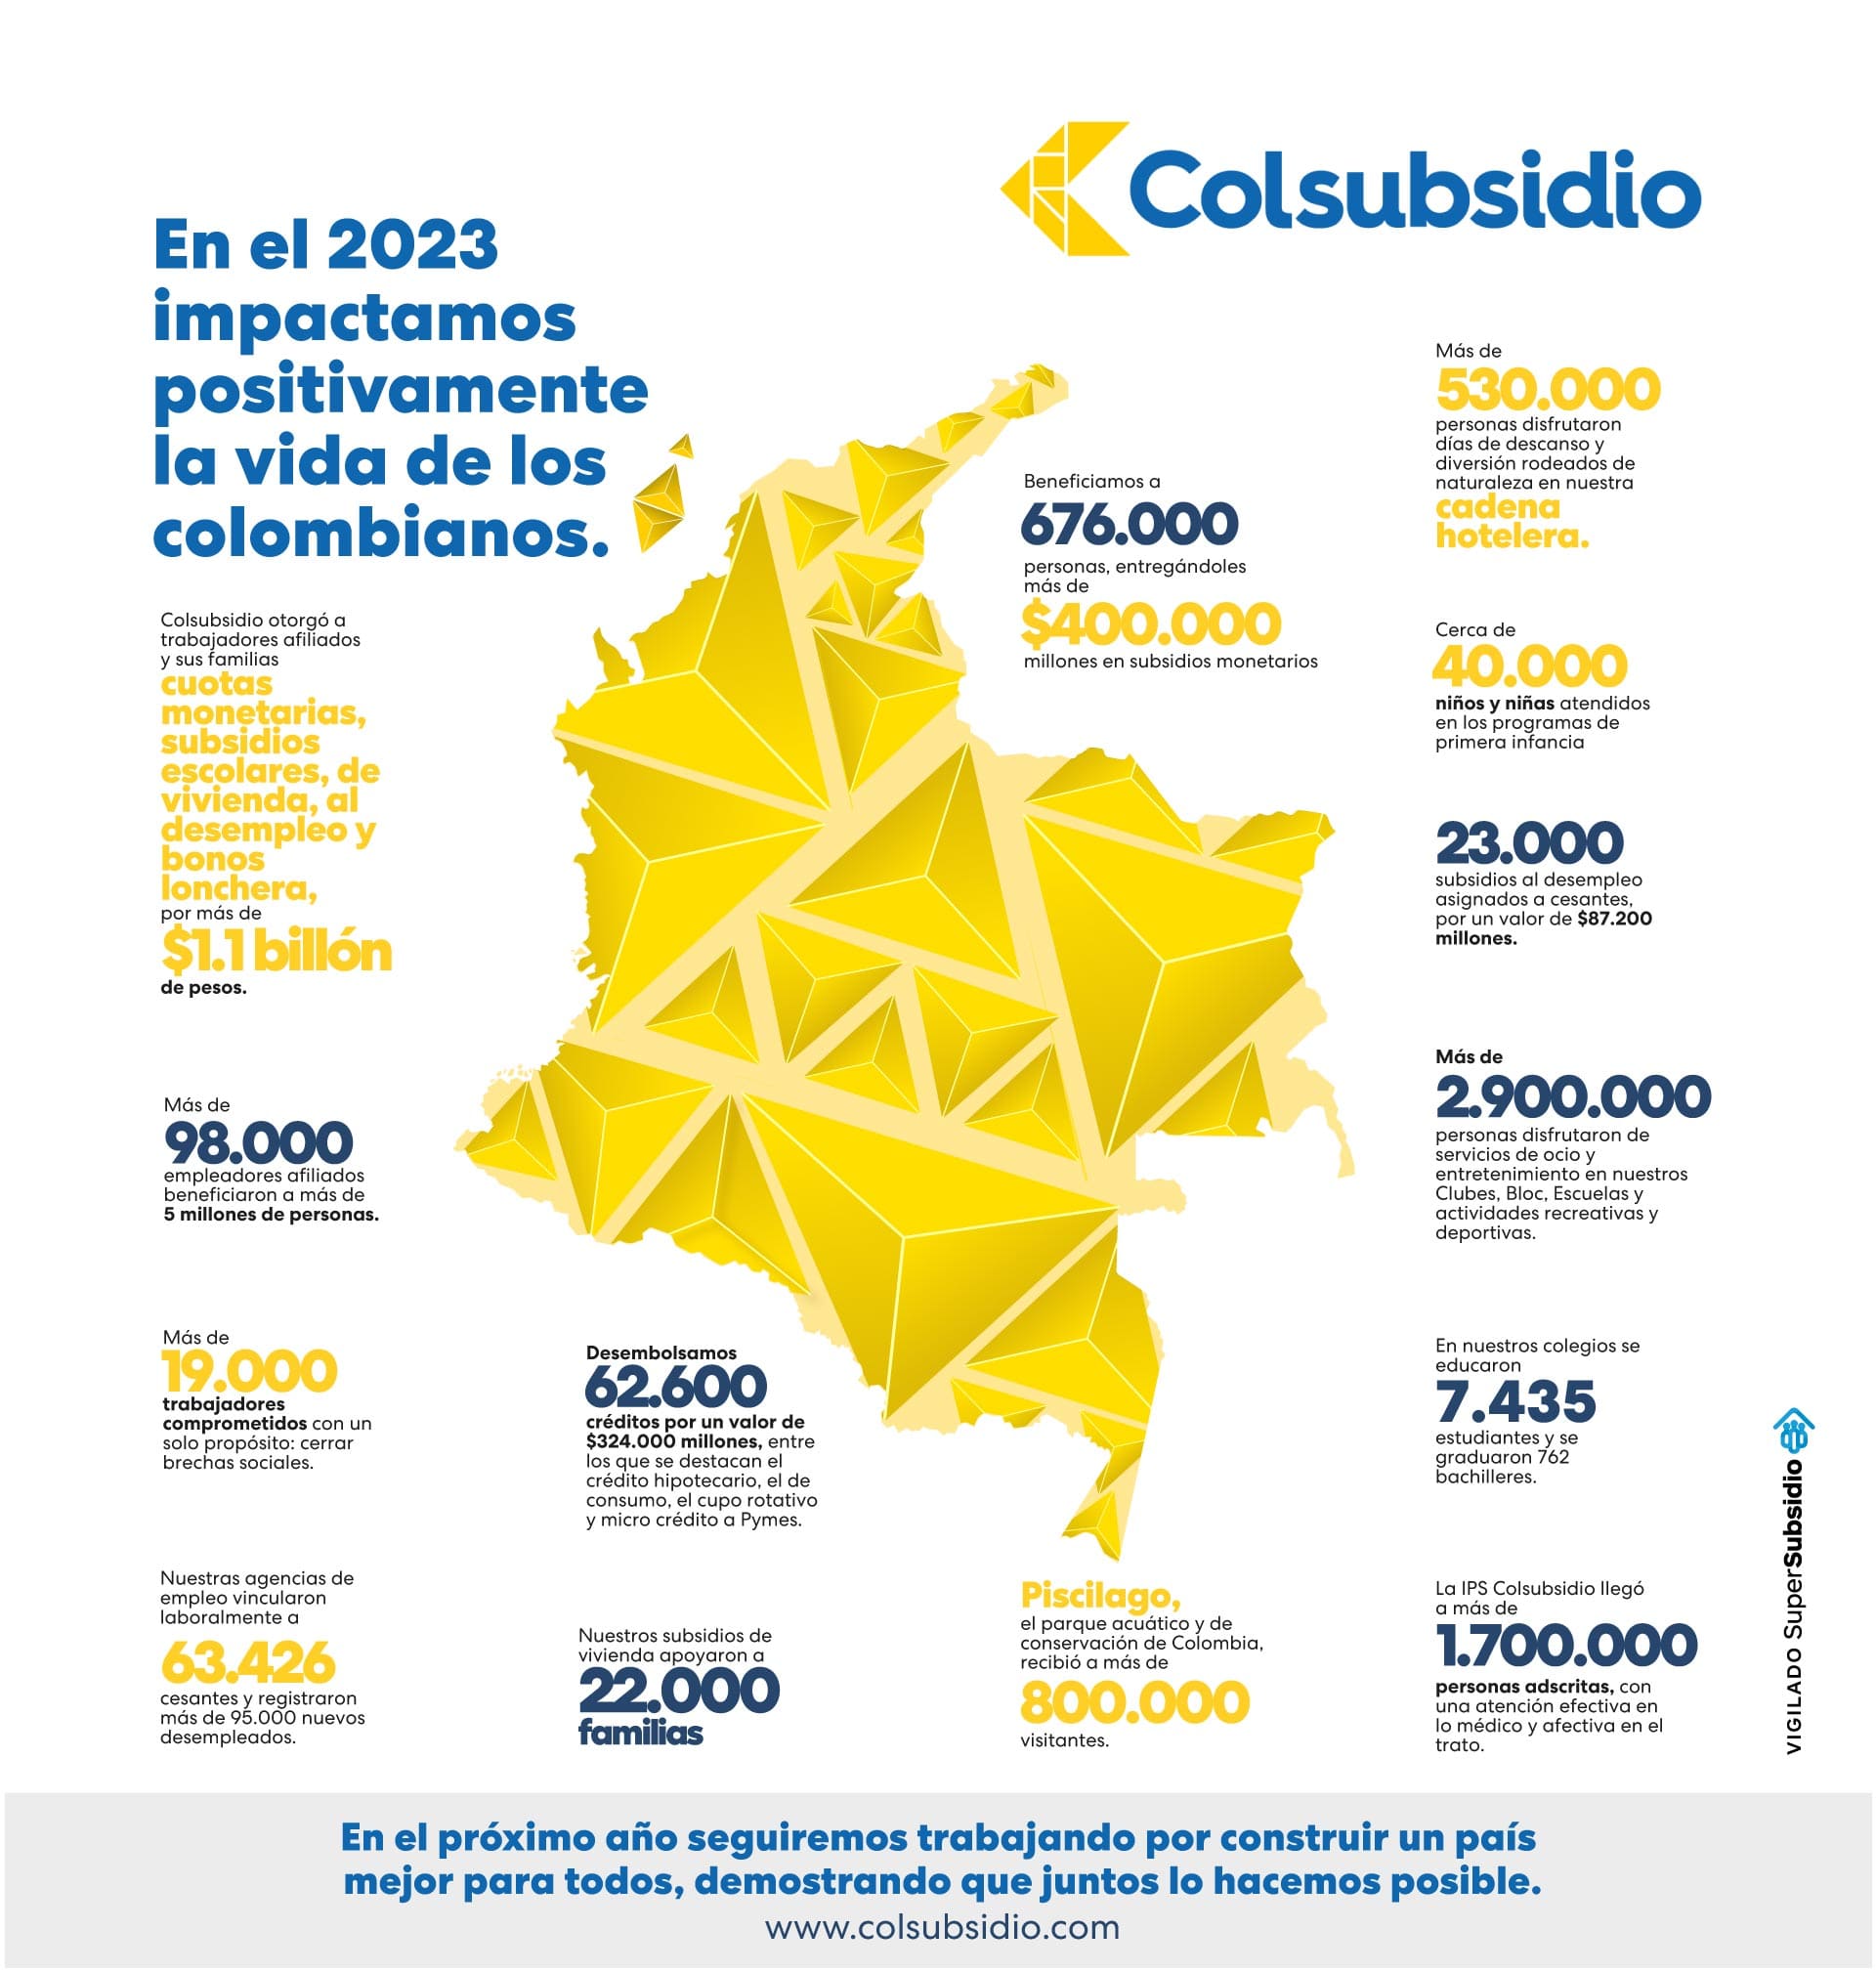 Informe de Colsubsidio sobre su gestión en 2023.